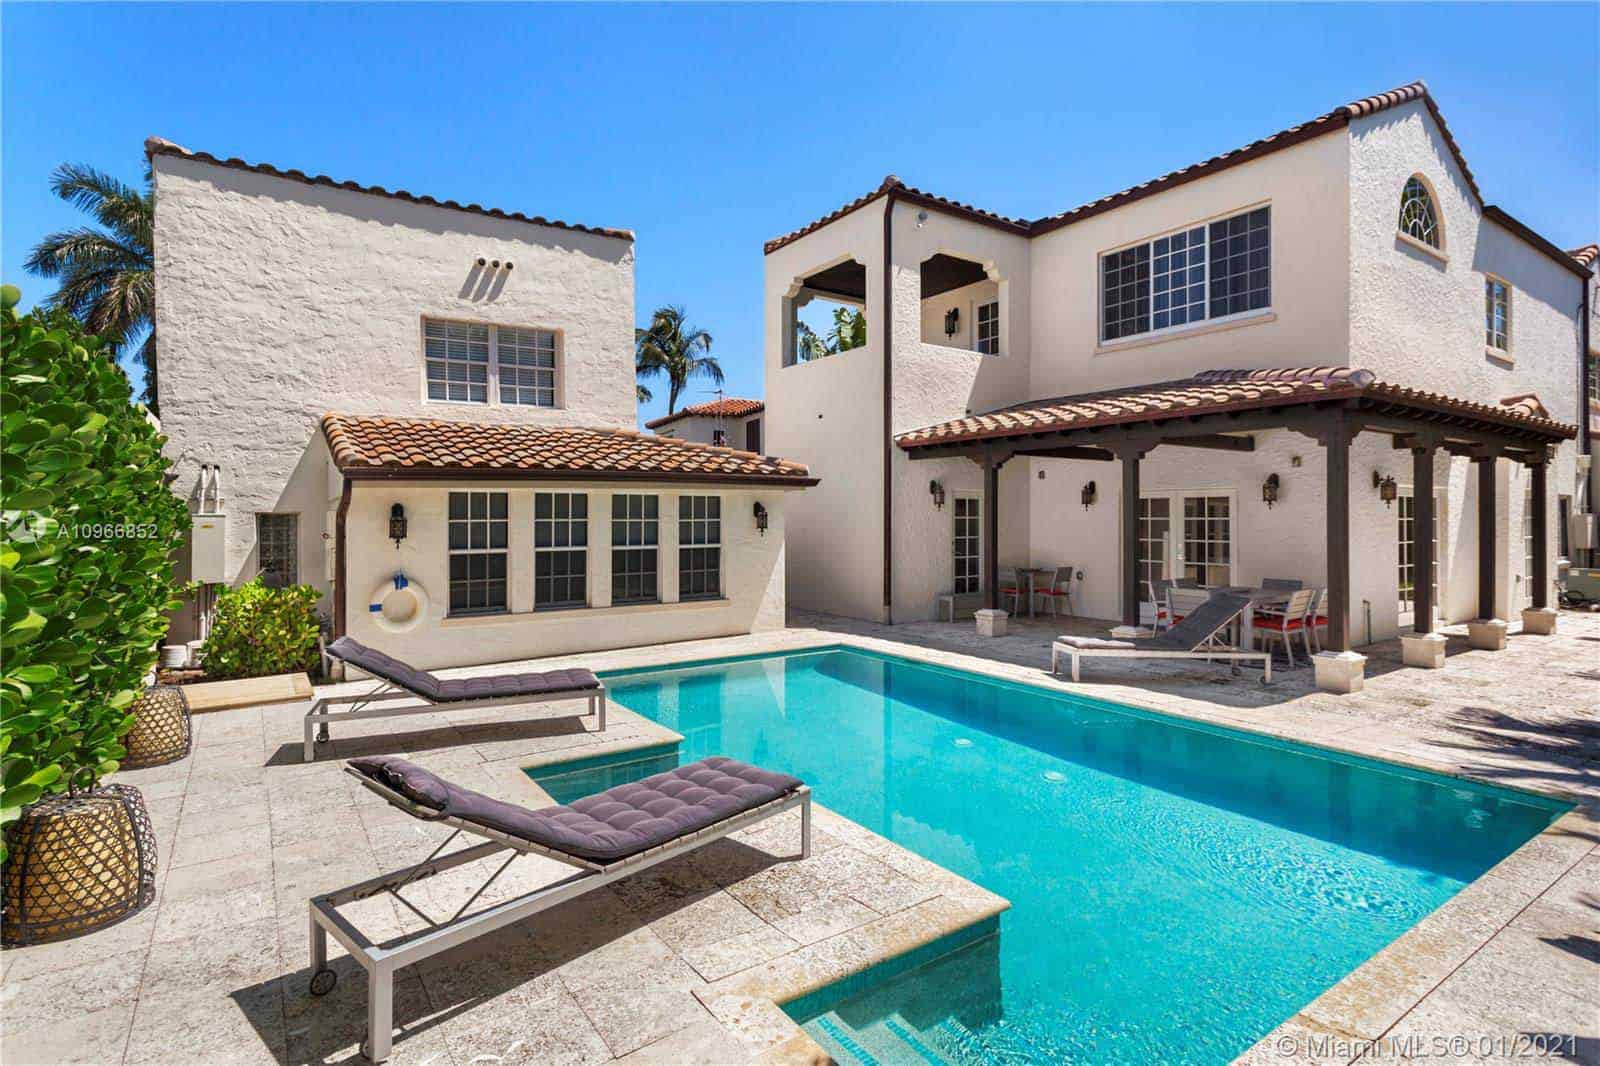 2914 ALTON RD, MIAMI BEACH, FL 33140: Ultra-Luxury Homes for Sale in Miami Beach